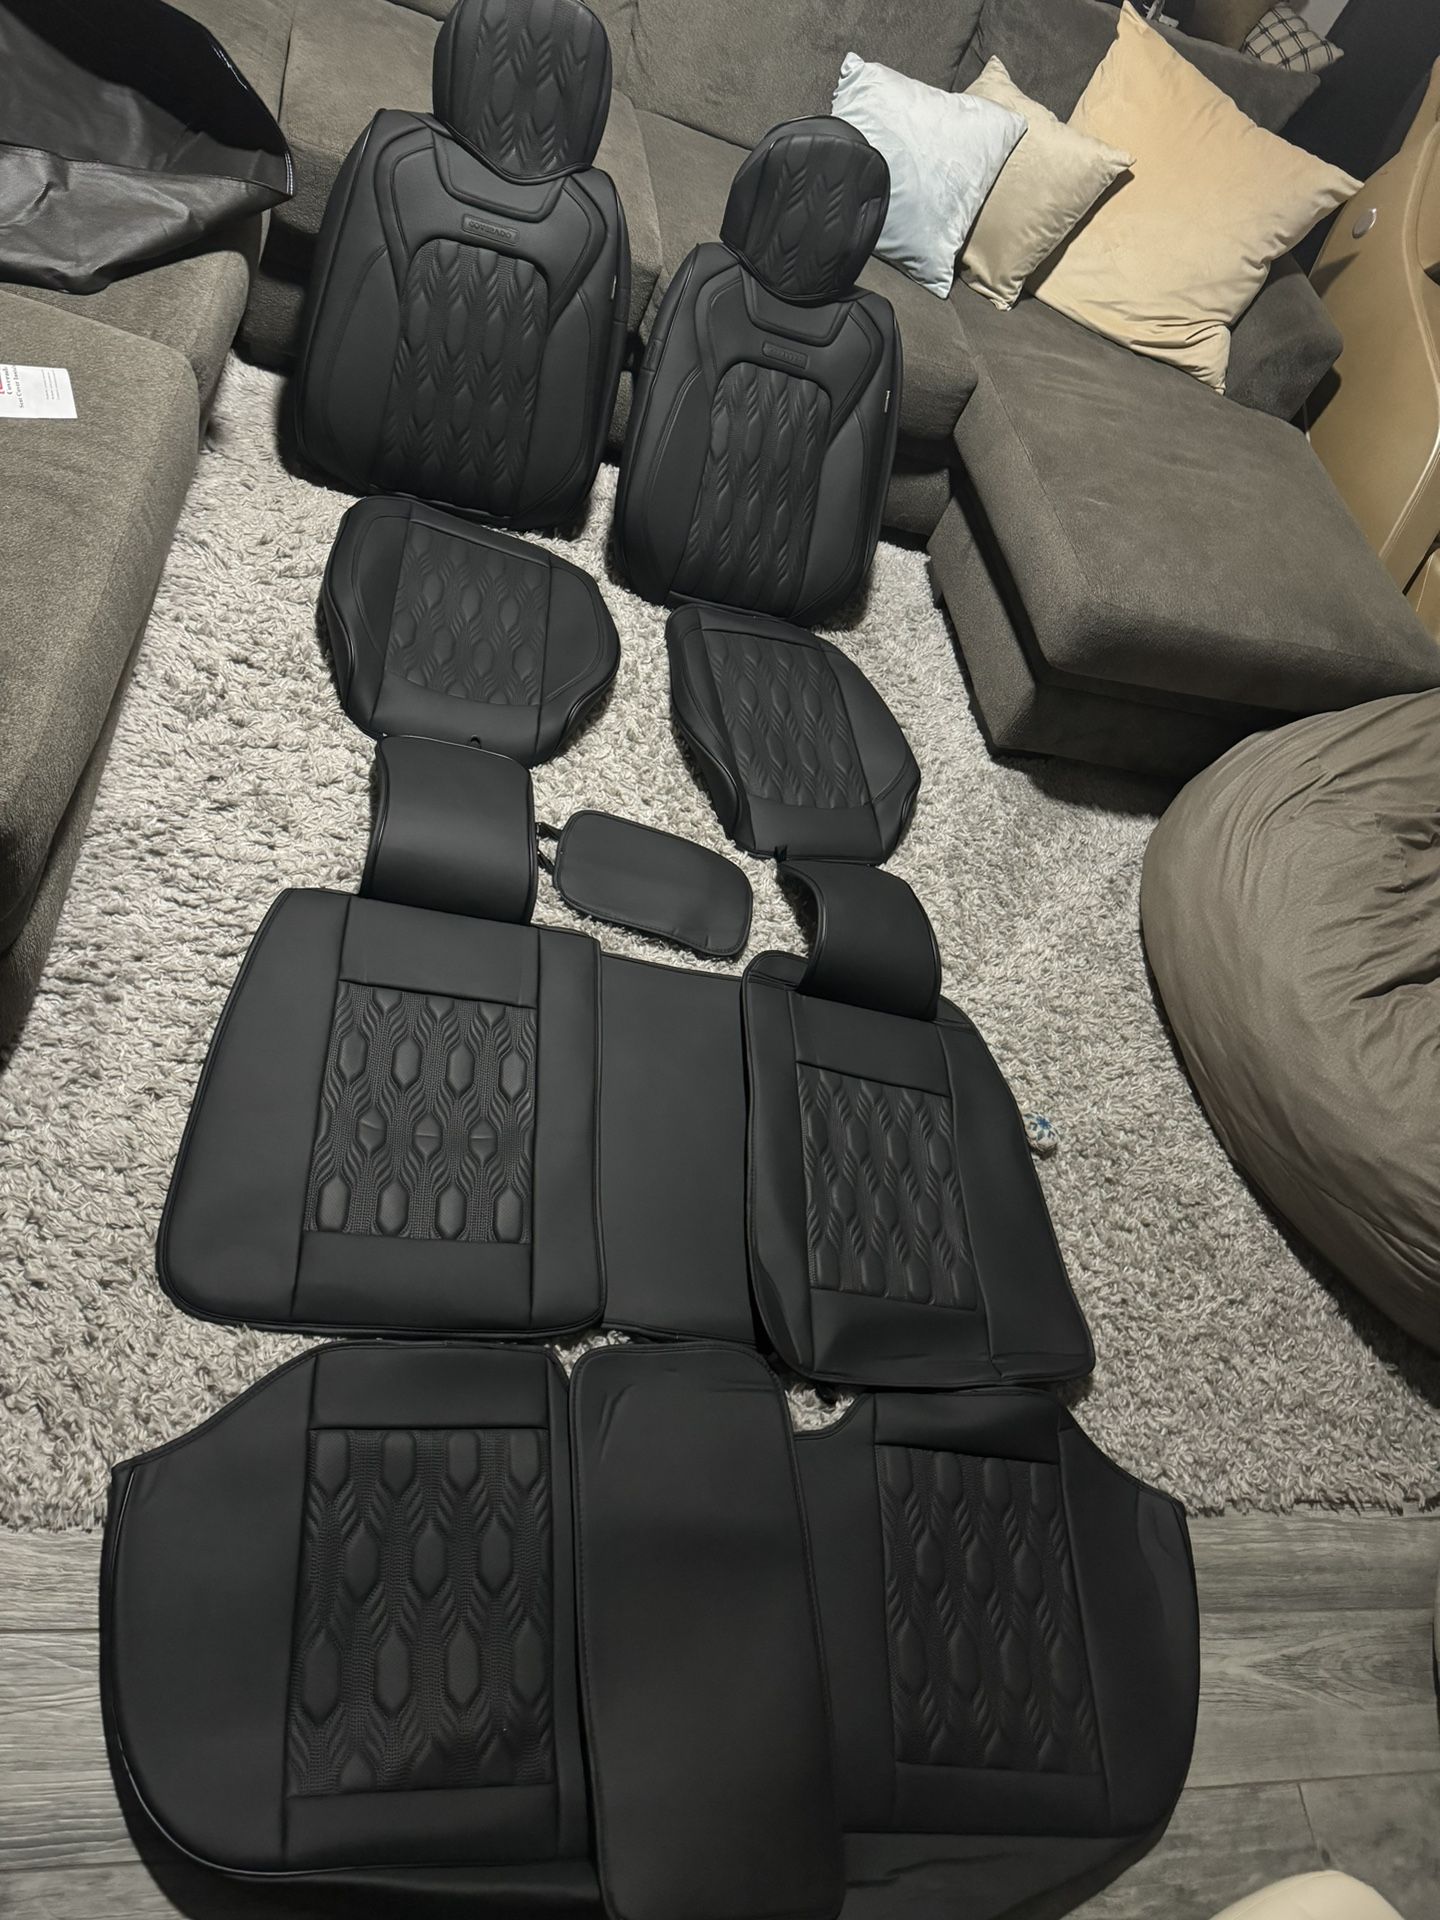 Full Set Car Seat Covers For Trucks/suvs/sedans(universal)